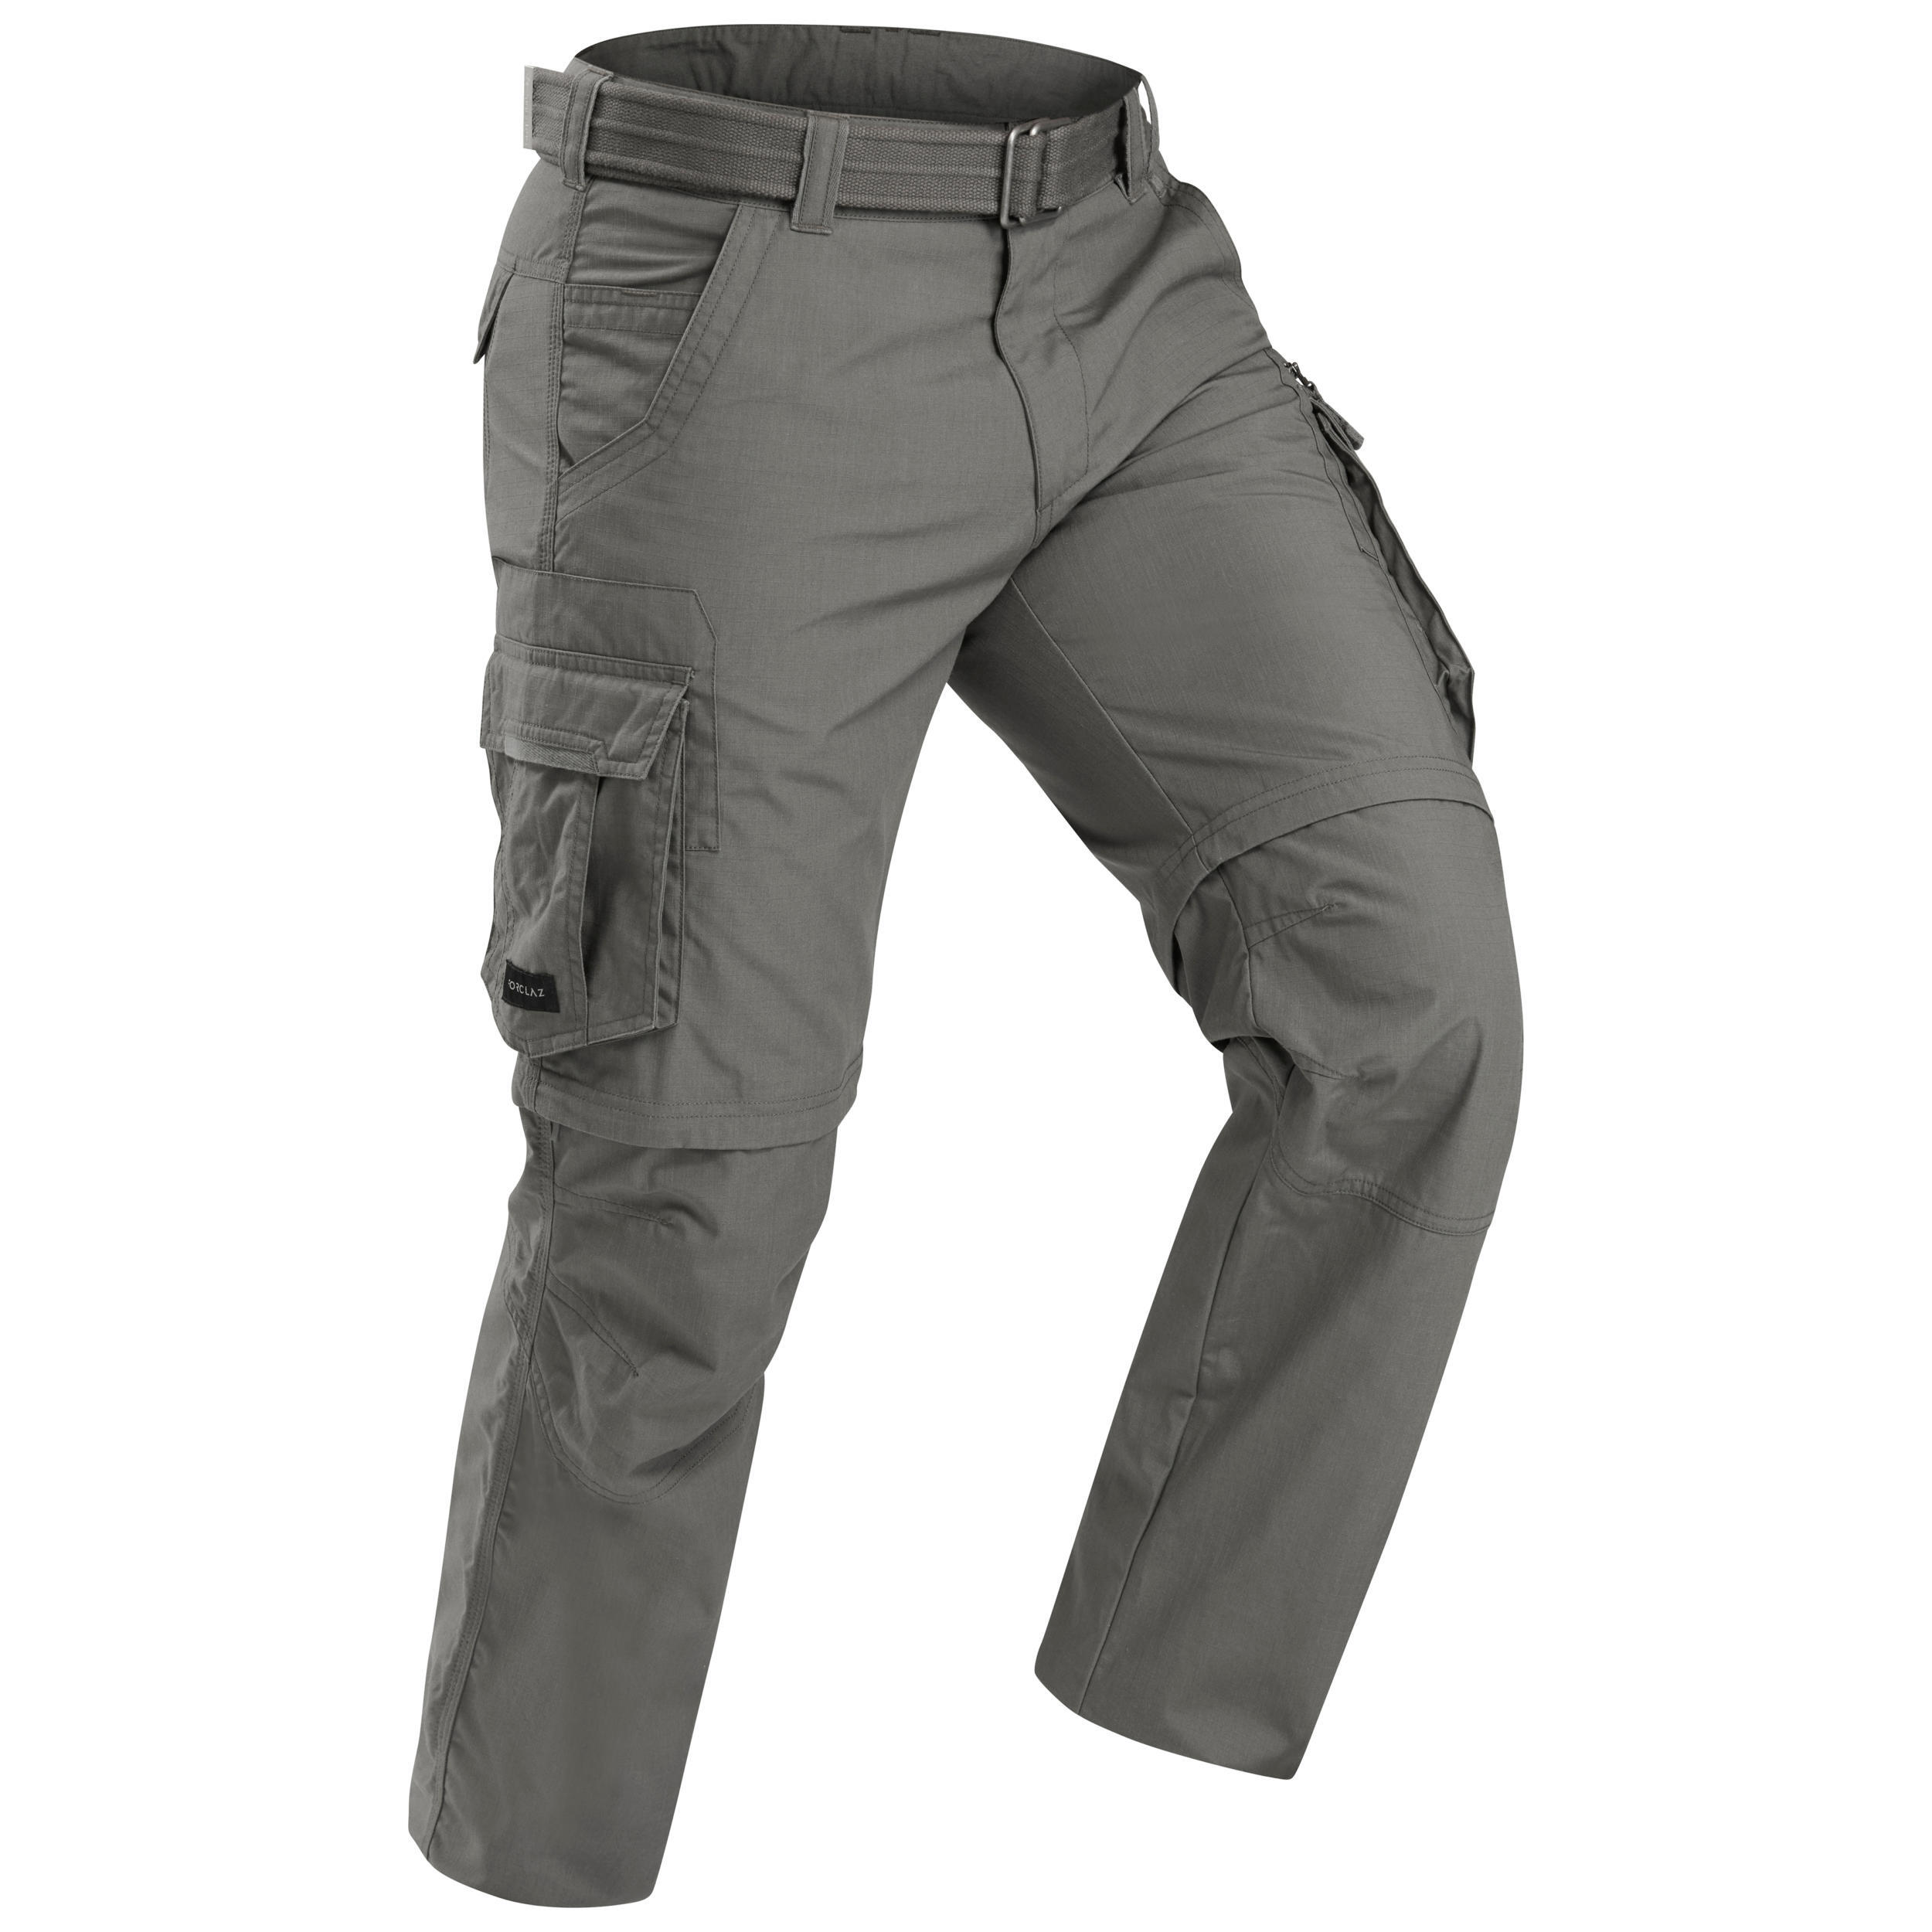 Men's Travel Trekking Zip-Off Cargo Trousers - Travel 100 Zip-Off - khaki 4/15